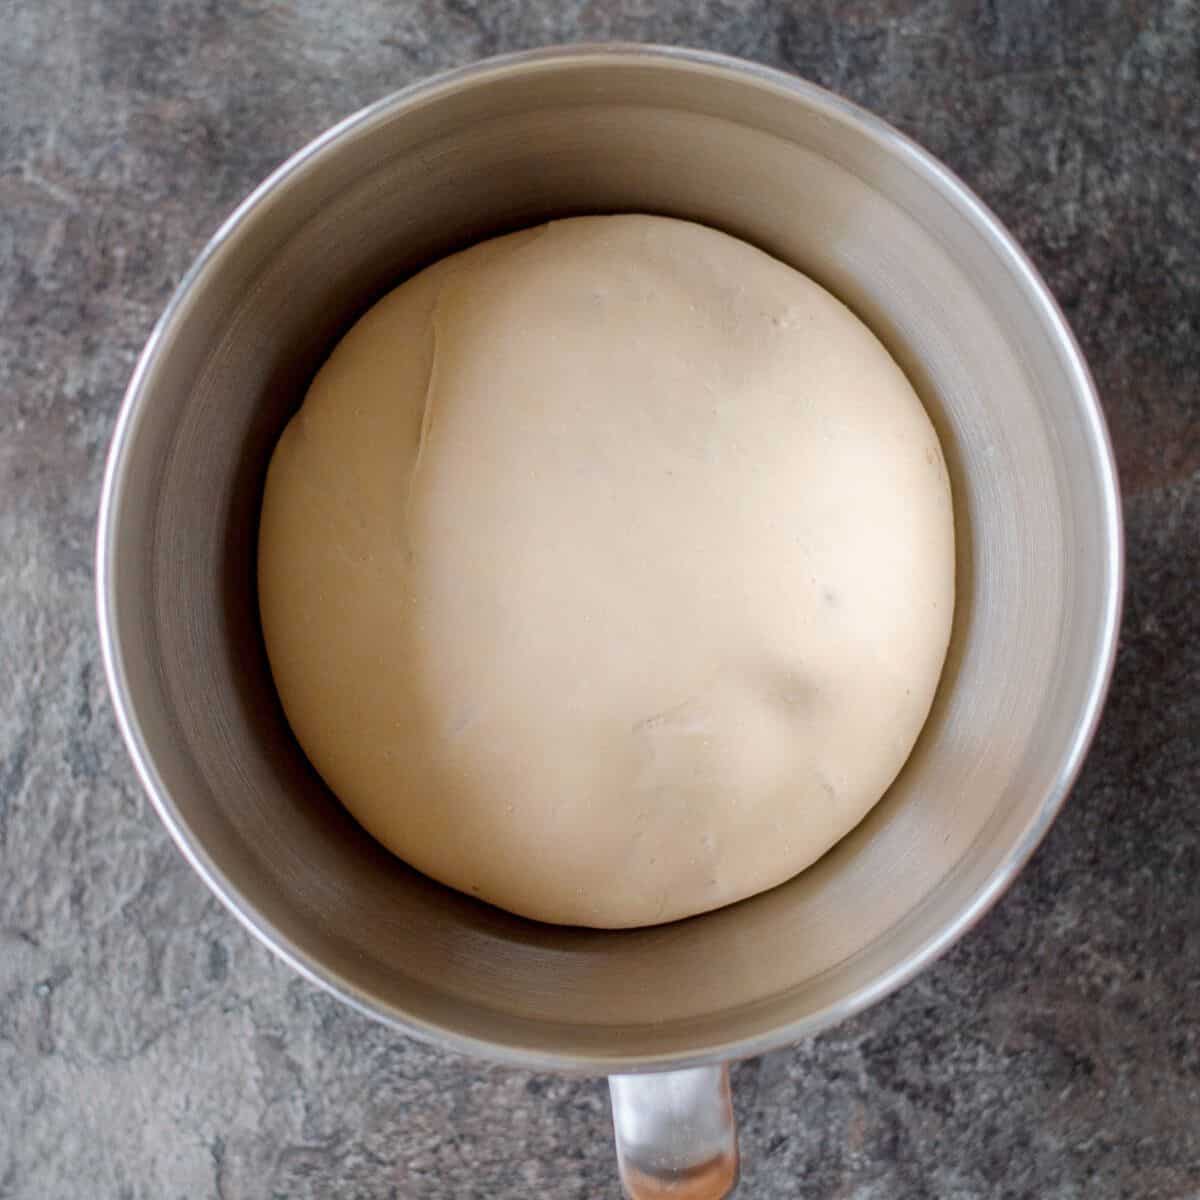 Dough risen in a large metal mixing bowl.